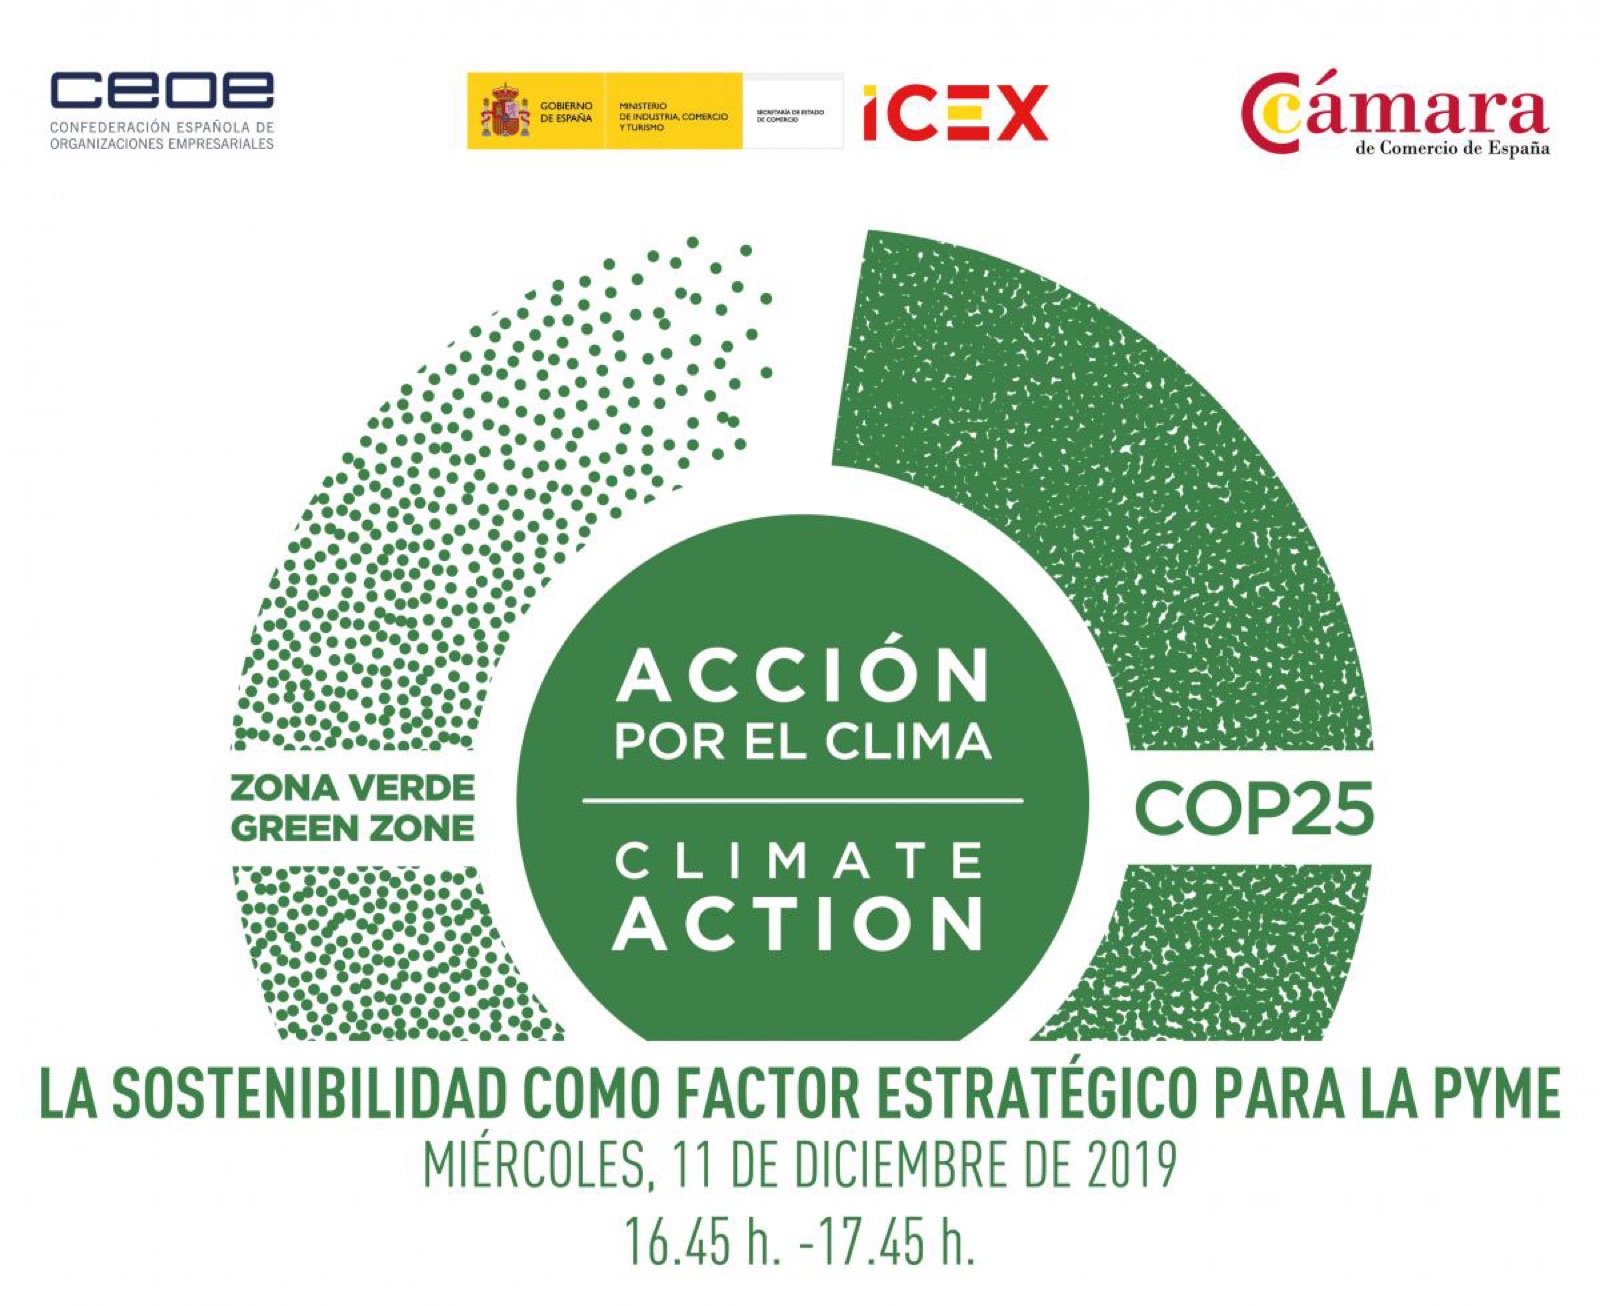 La Cámara de Comercio de Soria invita a las empresas del Club Cámara a participar en la Cumbre del Clima de Madrid